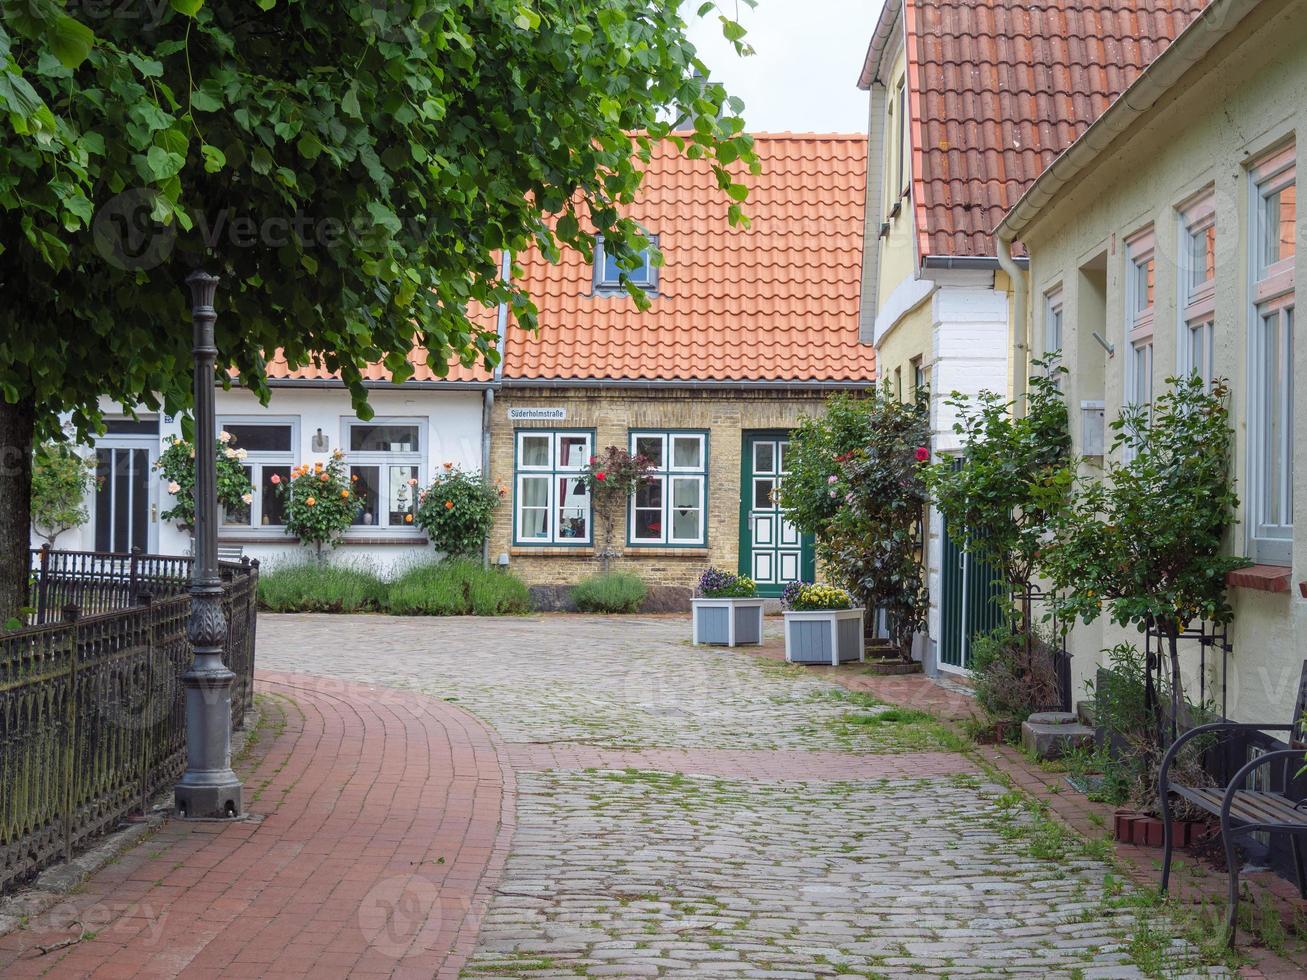 cidade de schleswig com a vila de azinheira foto